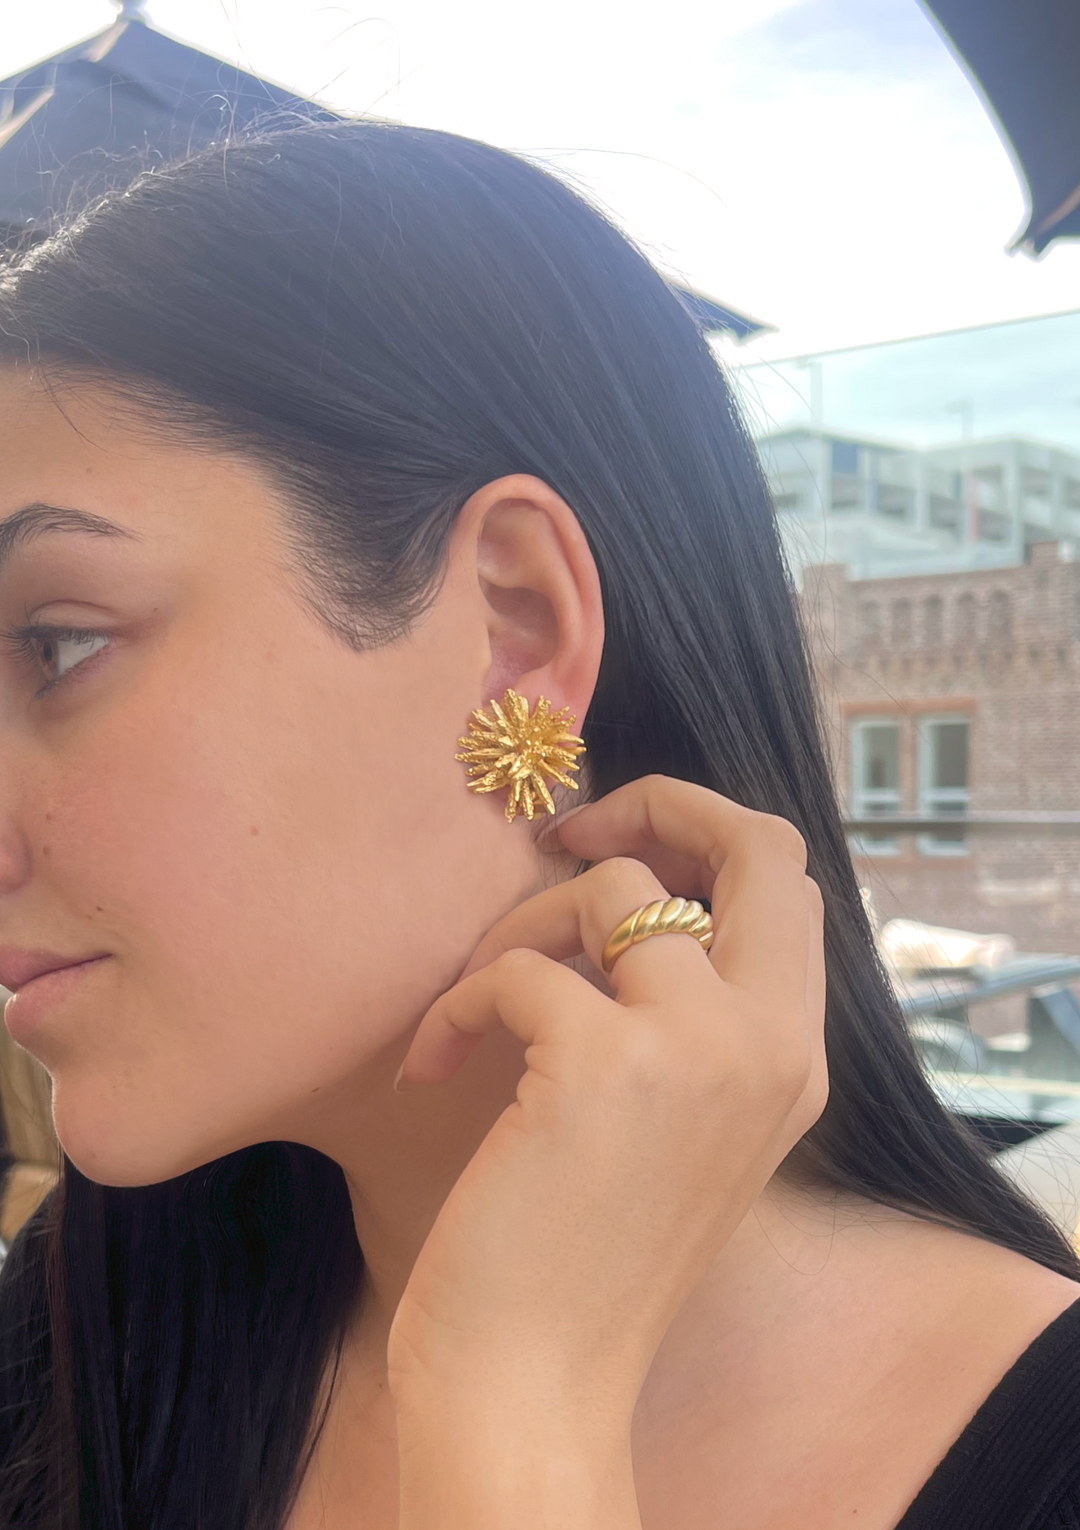 Starburst earrings - Karine Sultan